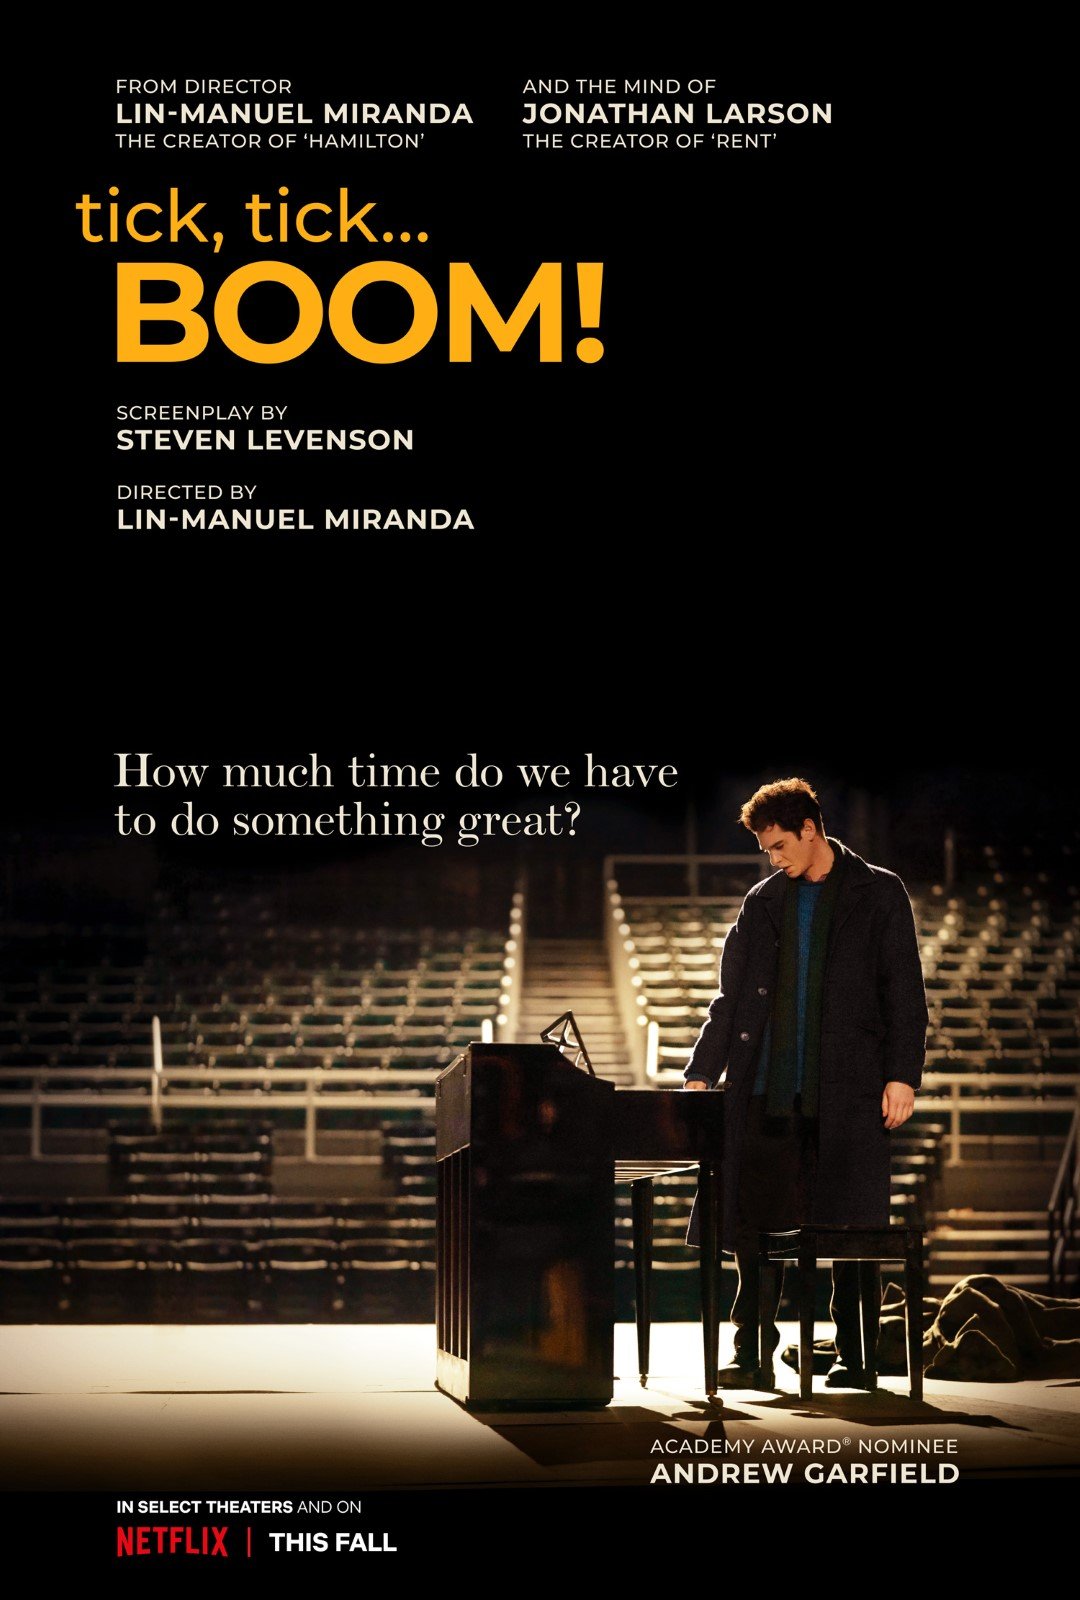 Tick, tick...BOOM! | Andrew Garfield na adaptação do musical autobiográfico de Jonathan Larson em filme na Netflix